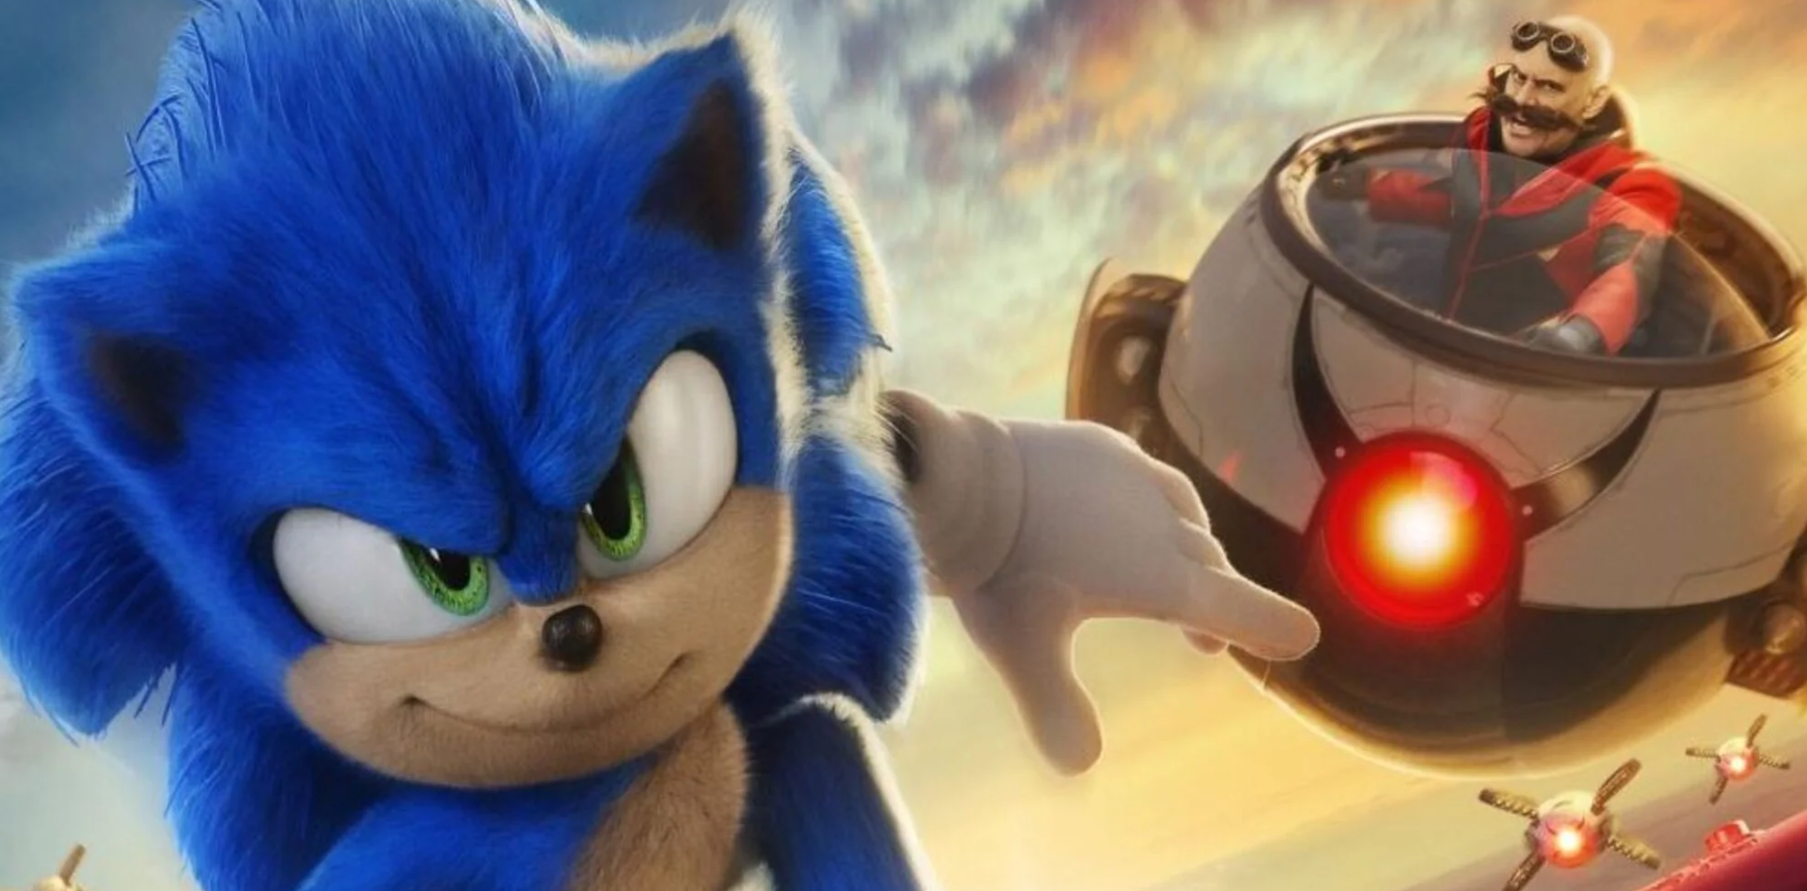 Immagine di Sonic the Hedgehog 2 è sempre più record di incassi per i film tratti dai videogiochi